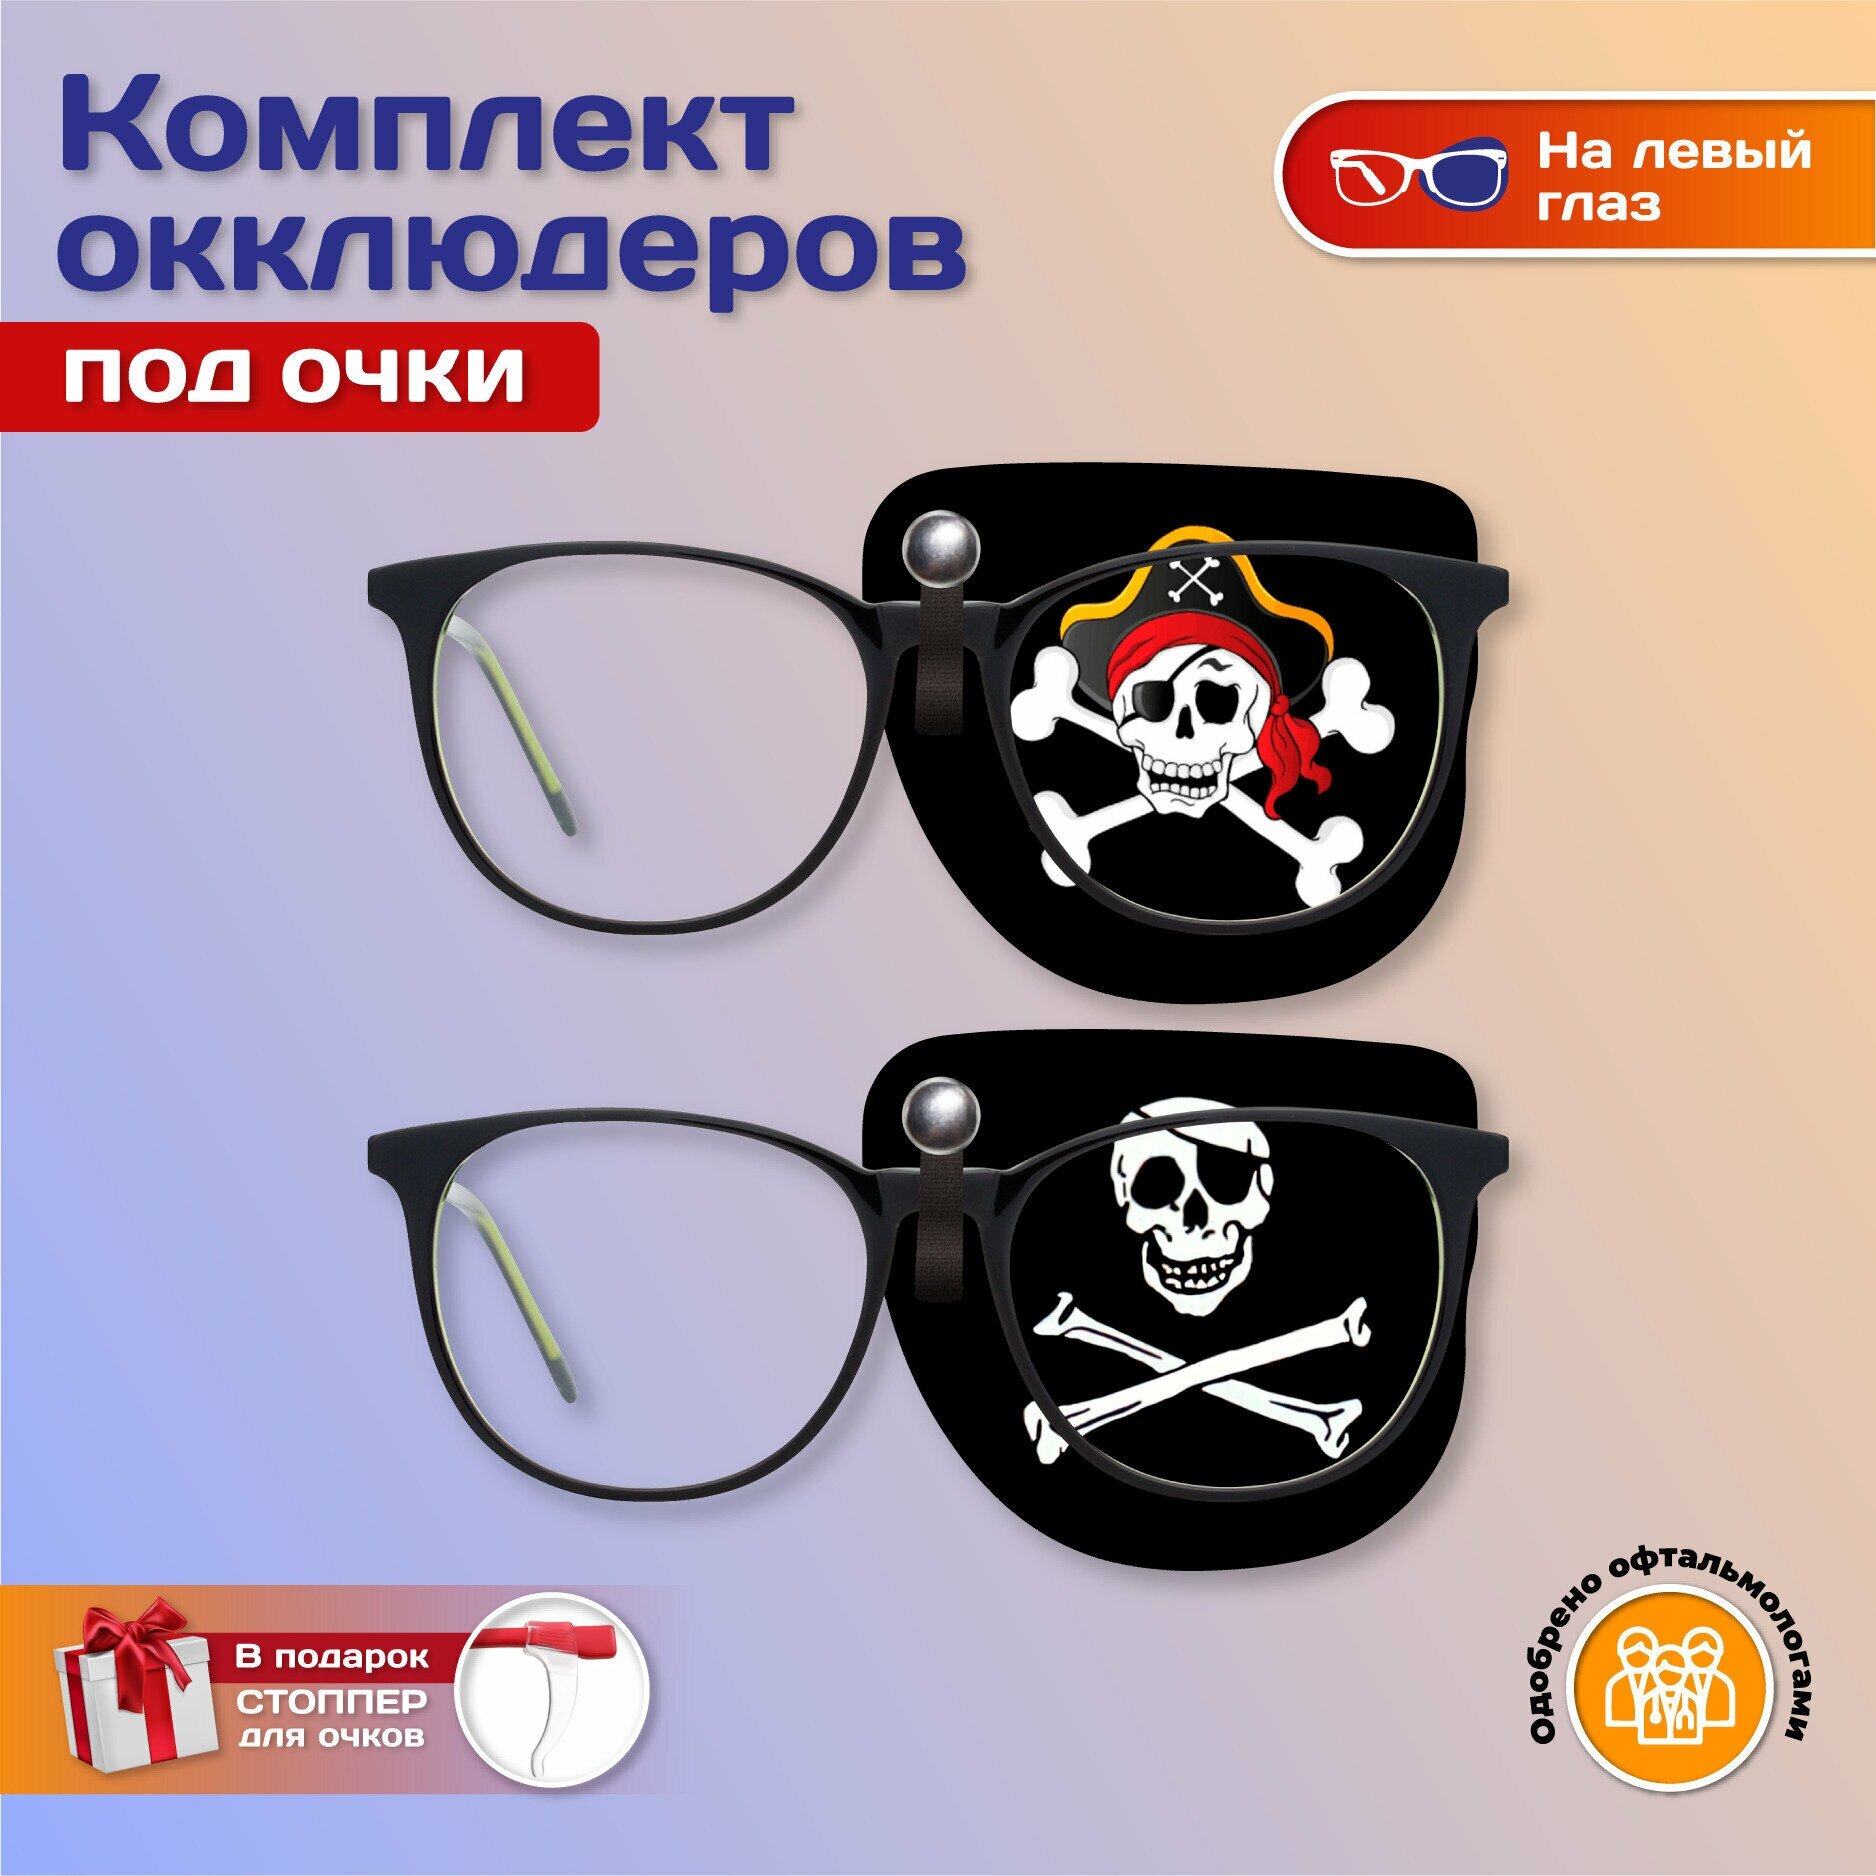 Комплект окклюдеров под очки "Пират" на левый глаз